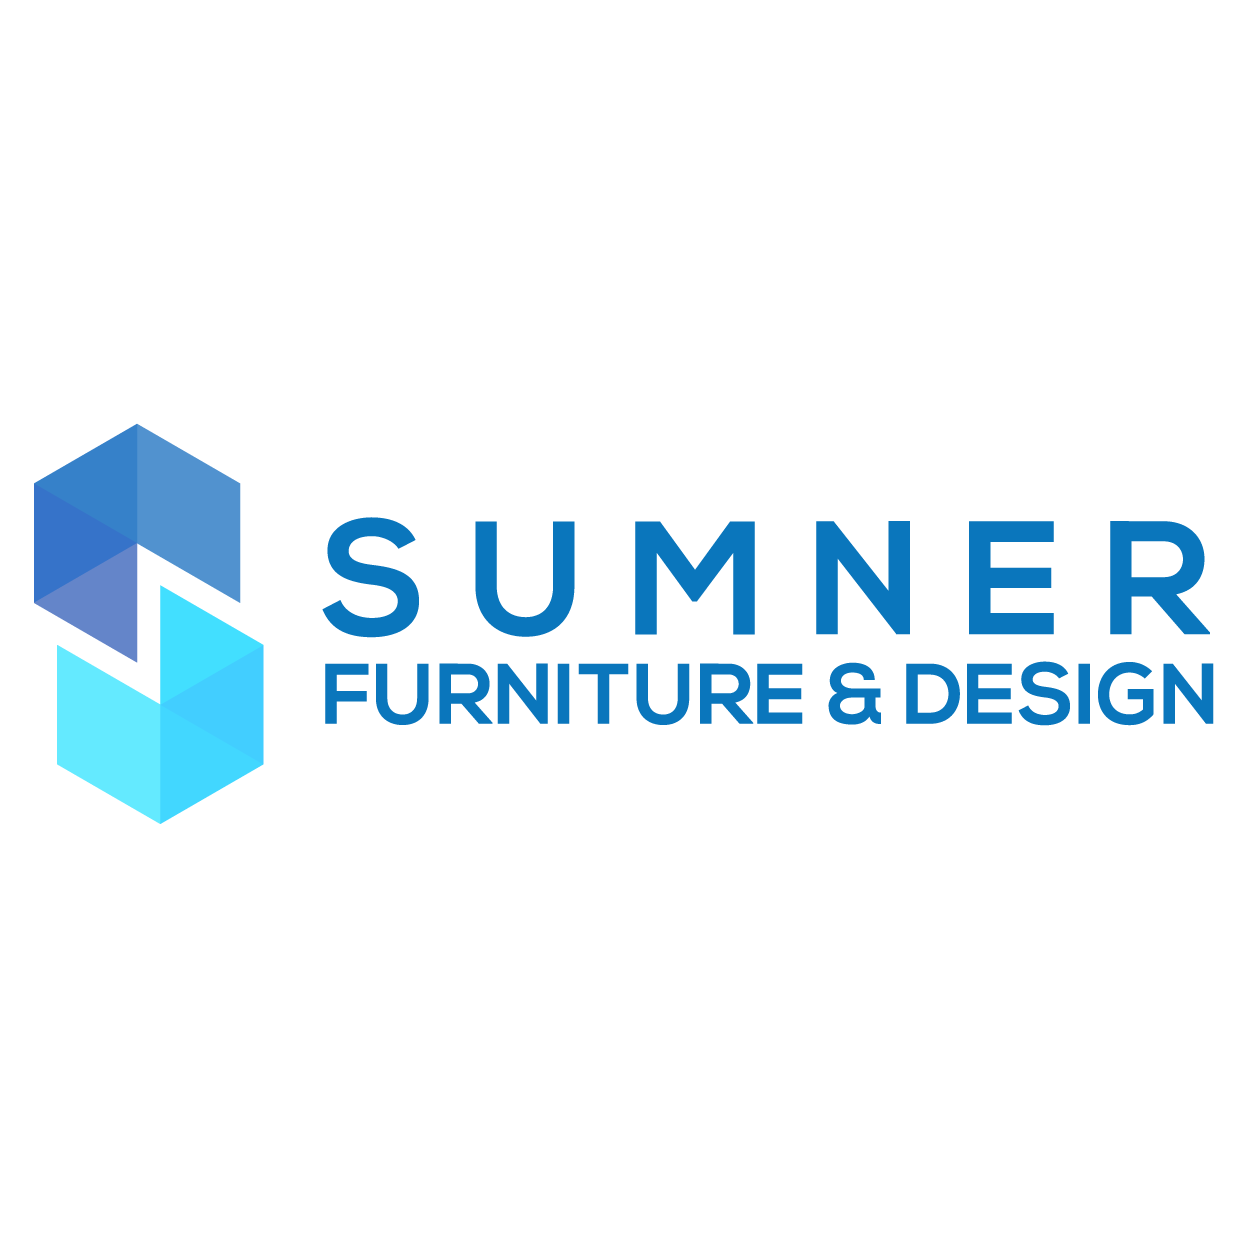 Sumner Furniture and Design